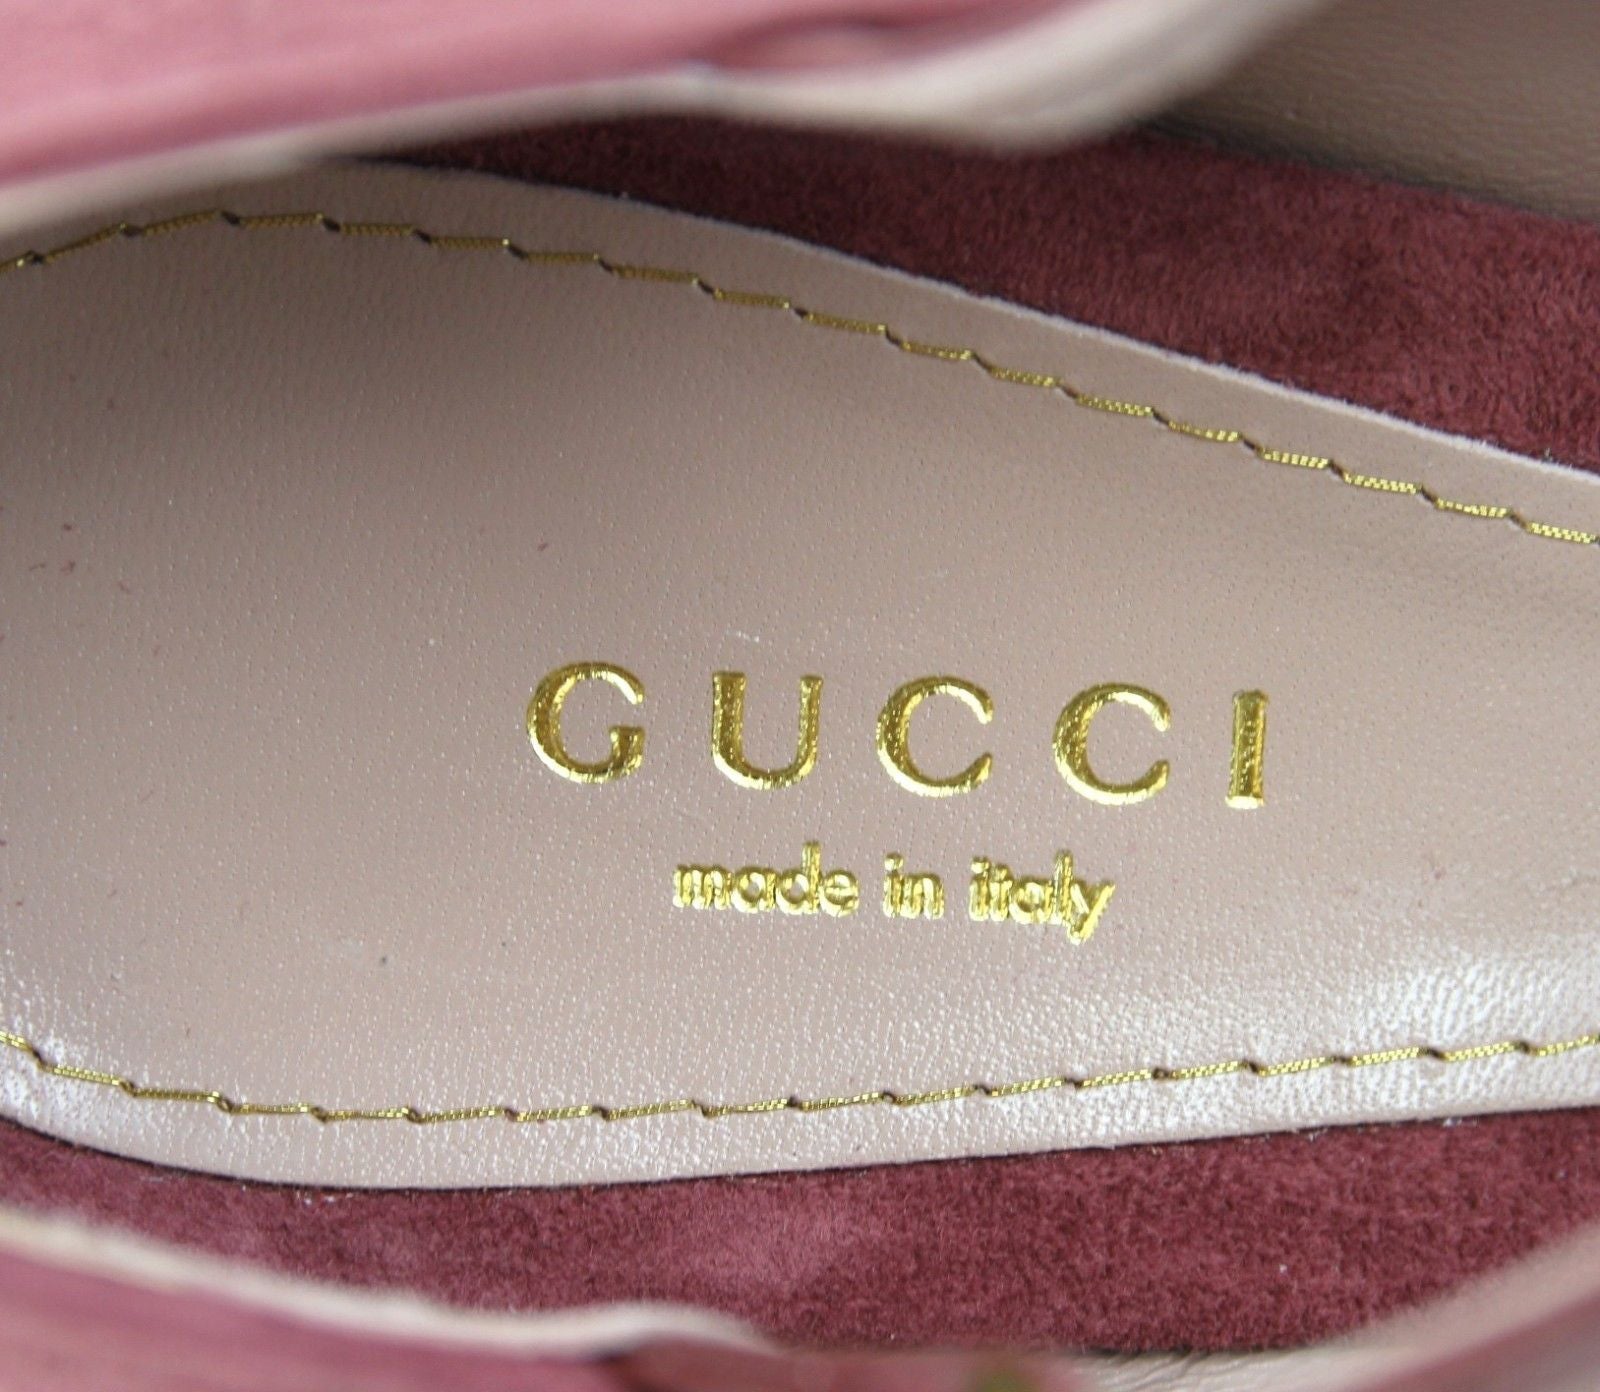 Gucci Women Tibet Red Suede High Heel Pump Shoes